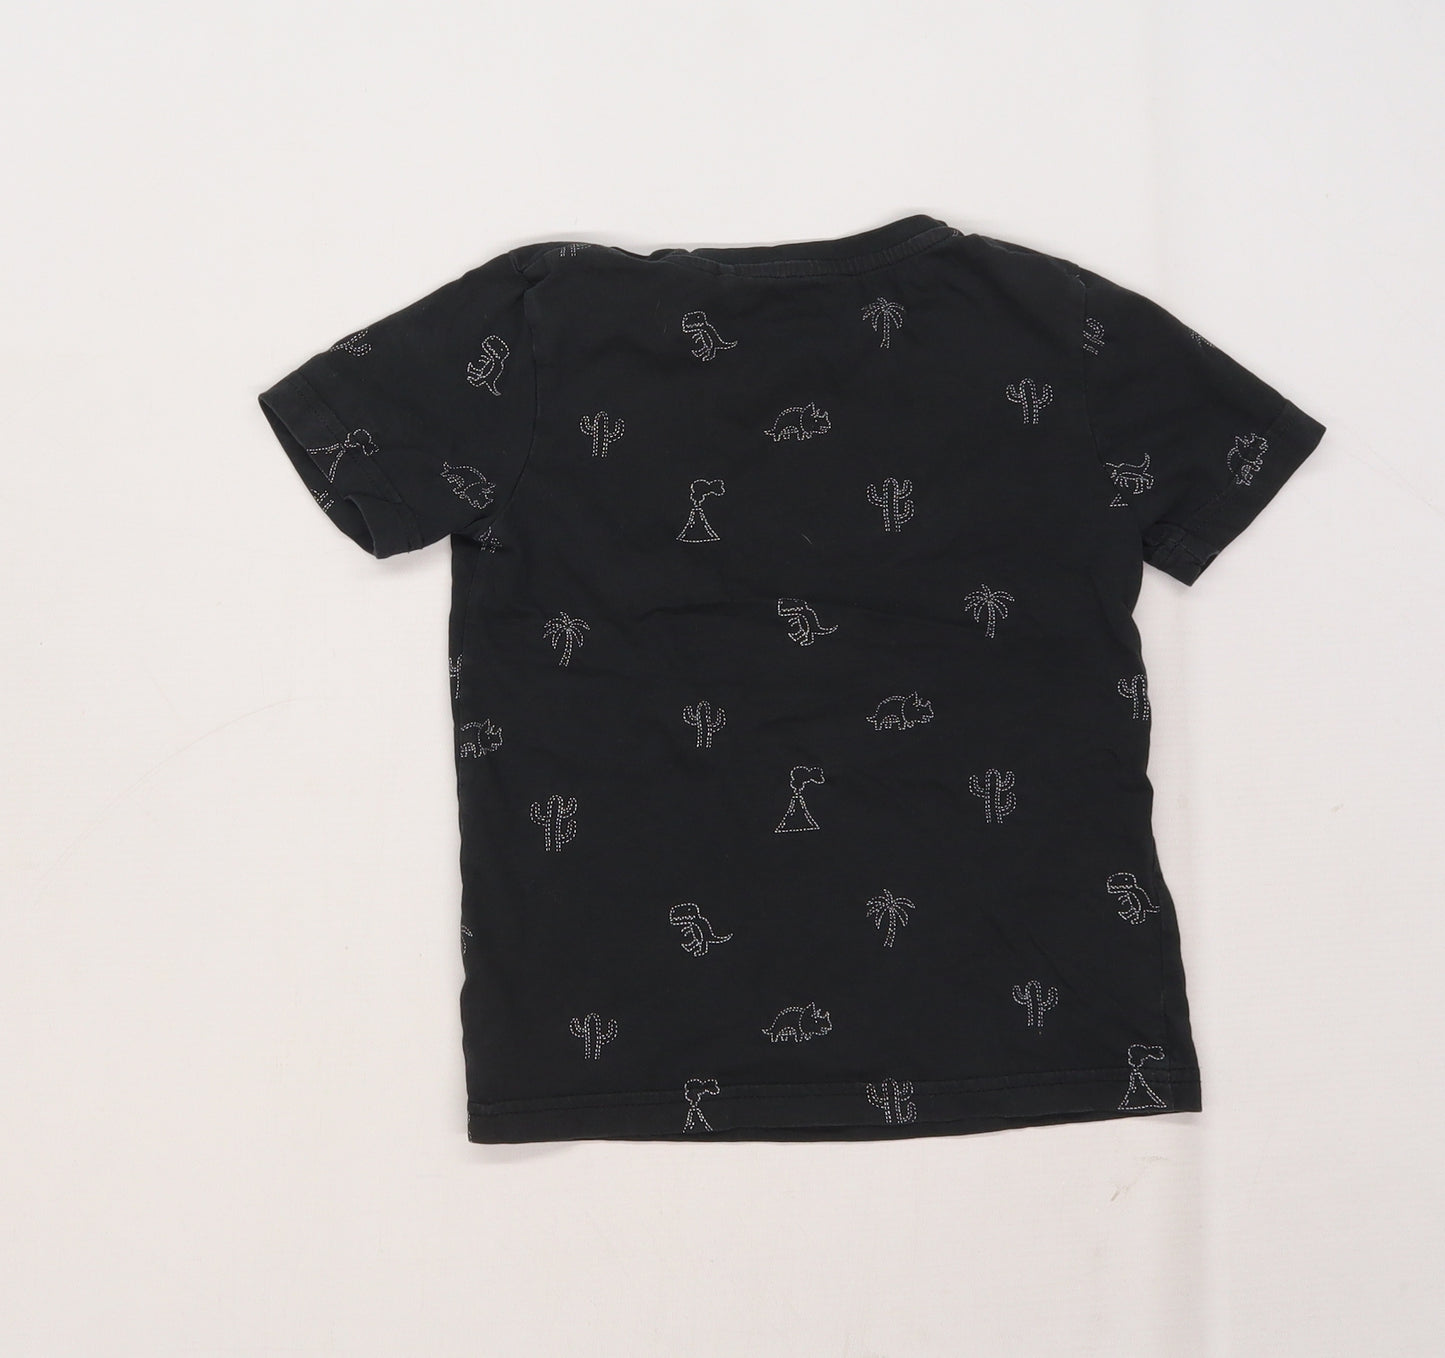 TU Boys Black   Basic T-Shirt Size 3-4 Years  - Dinosaur